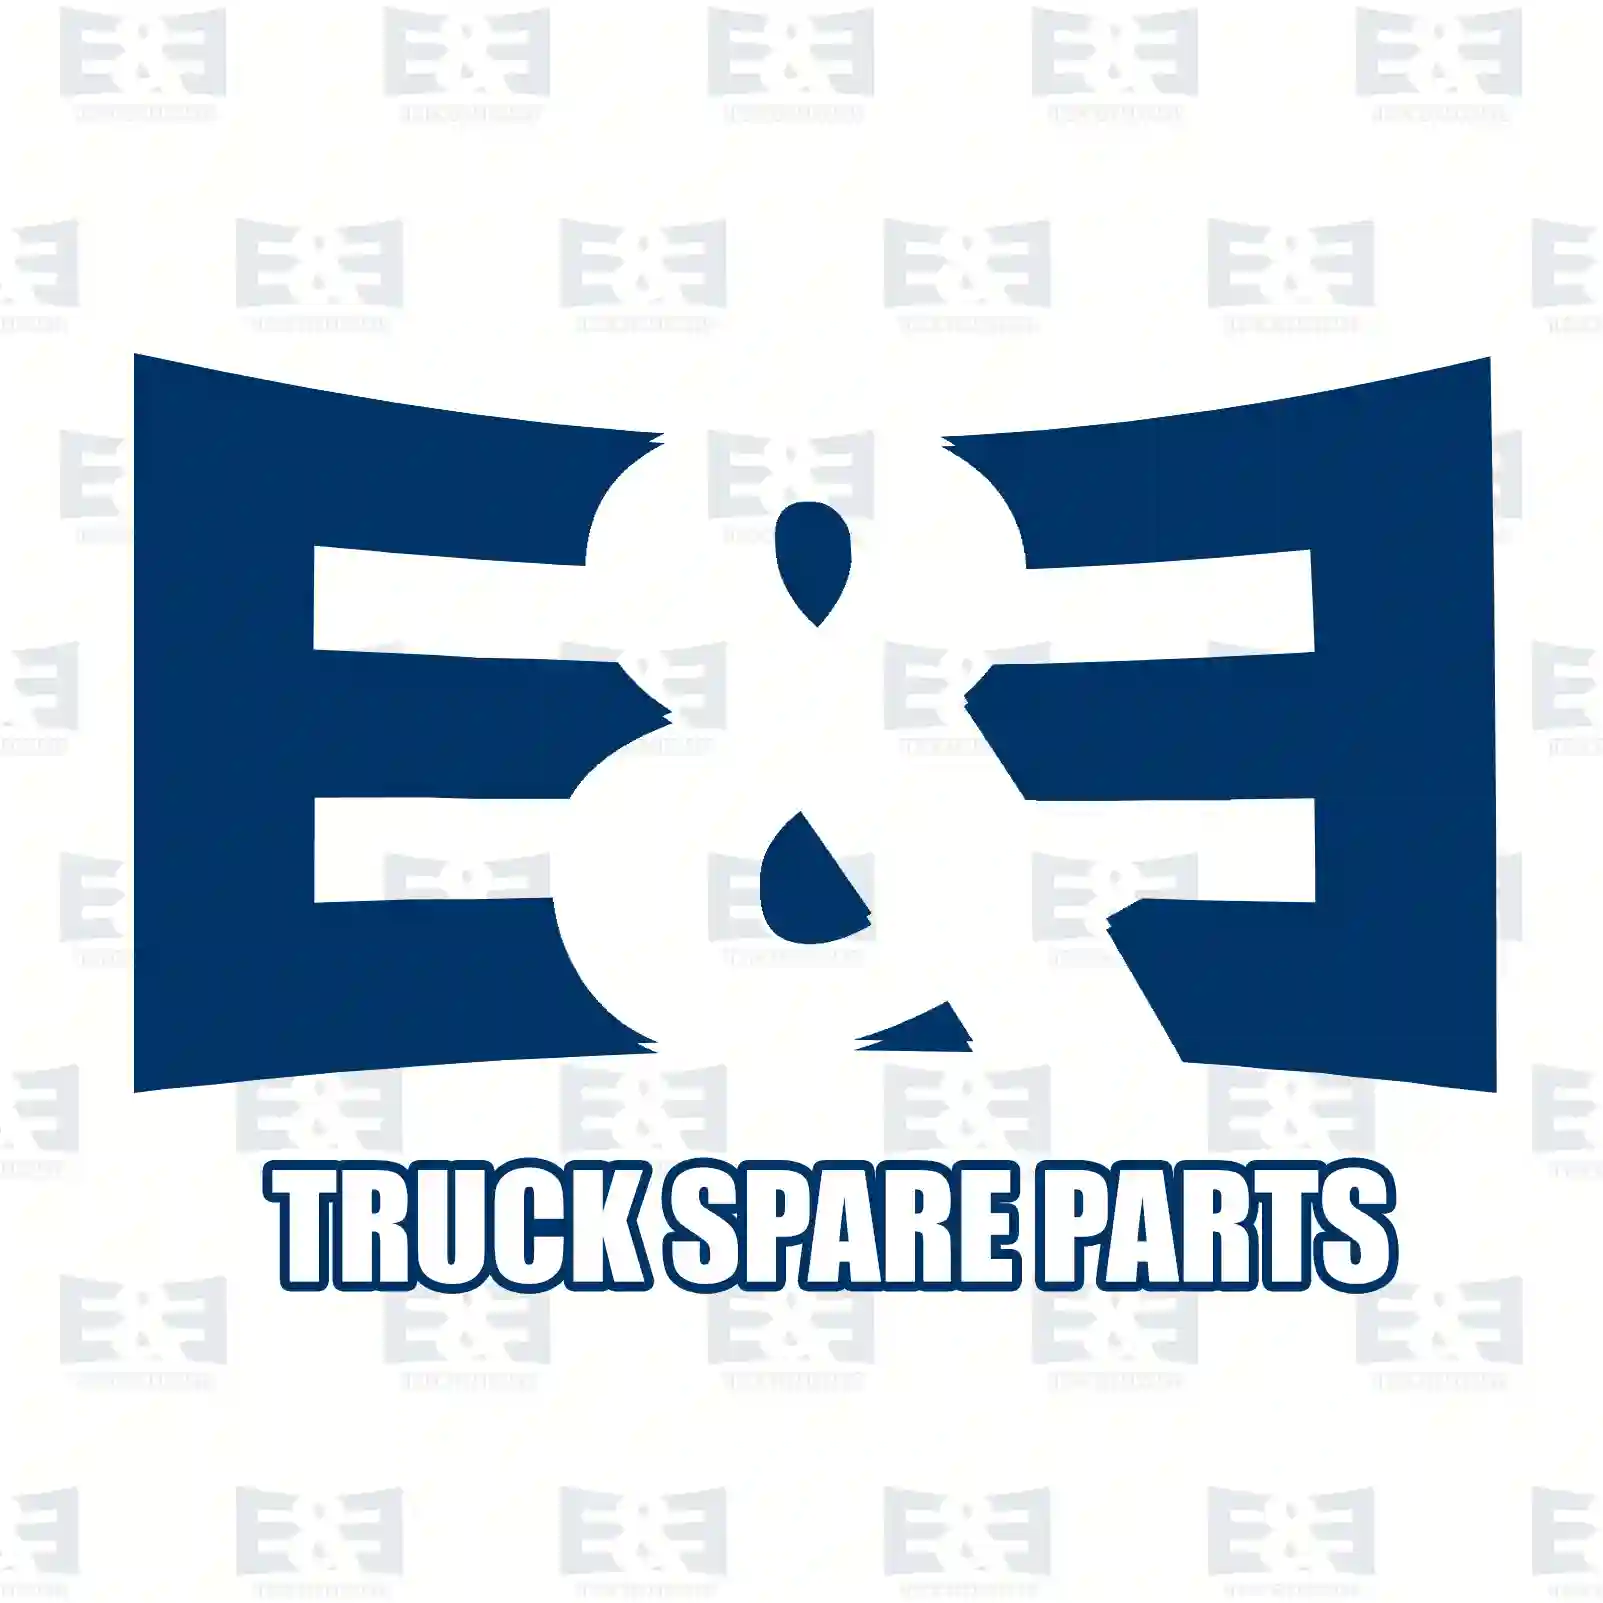 General overhaul kit, 2E2208400, 3660103708, 36601 ||  2E2208400 E&E Truck Spare Parts | Truck Spare Parts, Auotomotive Spare Parts General overhaul kit, 2E2208400, 3660103708, 36601 ||  2E2208400 E&E Truck Spare Parts | Truck Spare Parts, Auotomotive Spare Parts